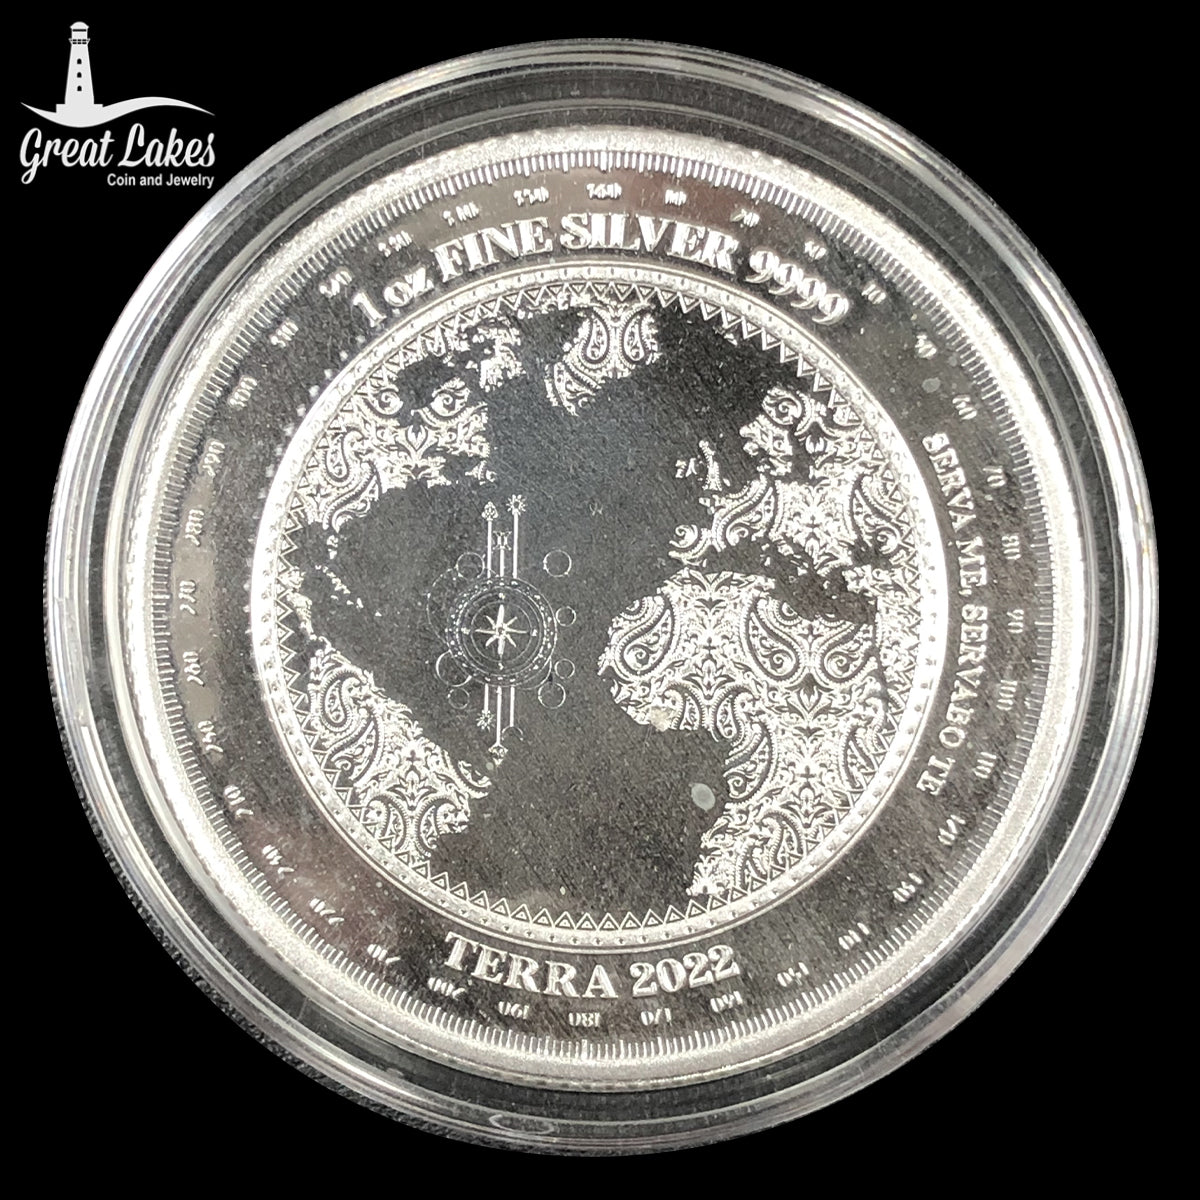 2022 Tokelau Terra 1 oz Silver Coin